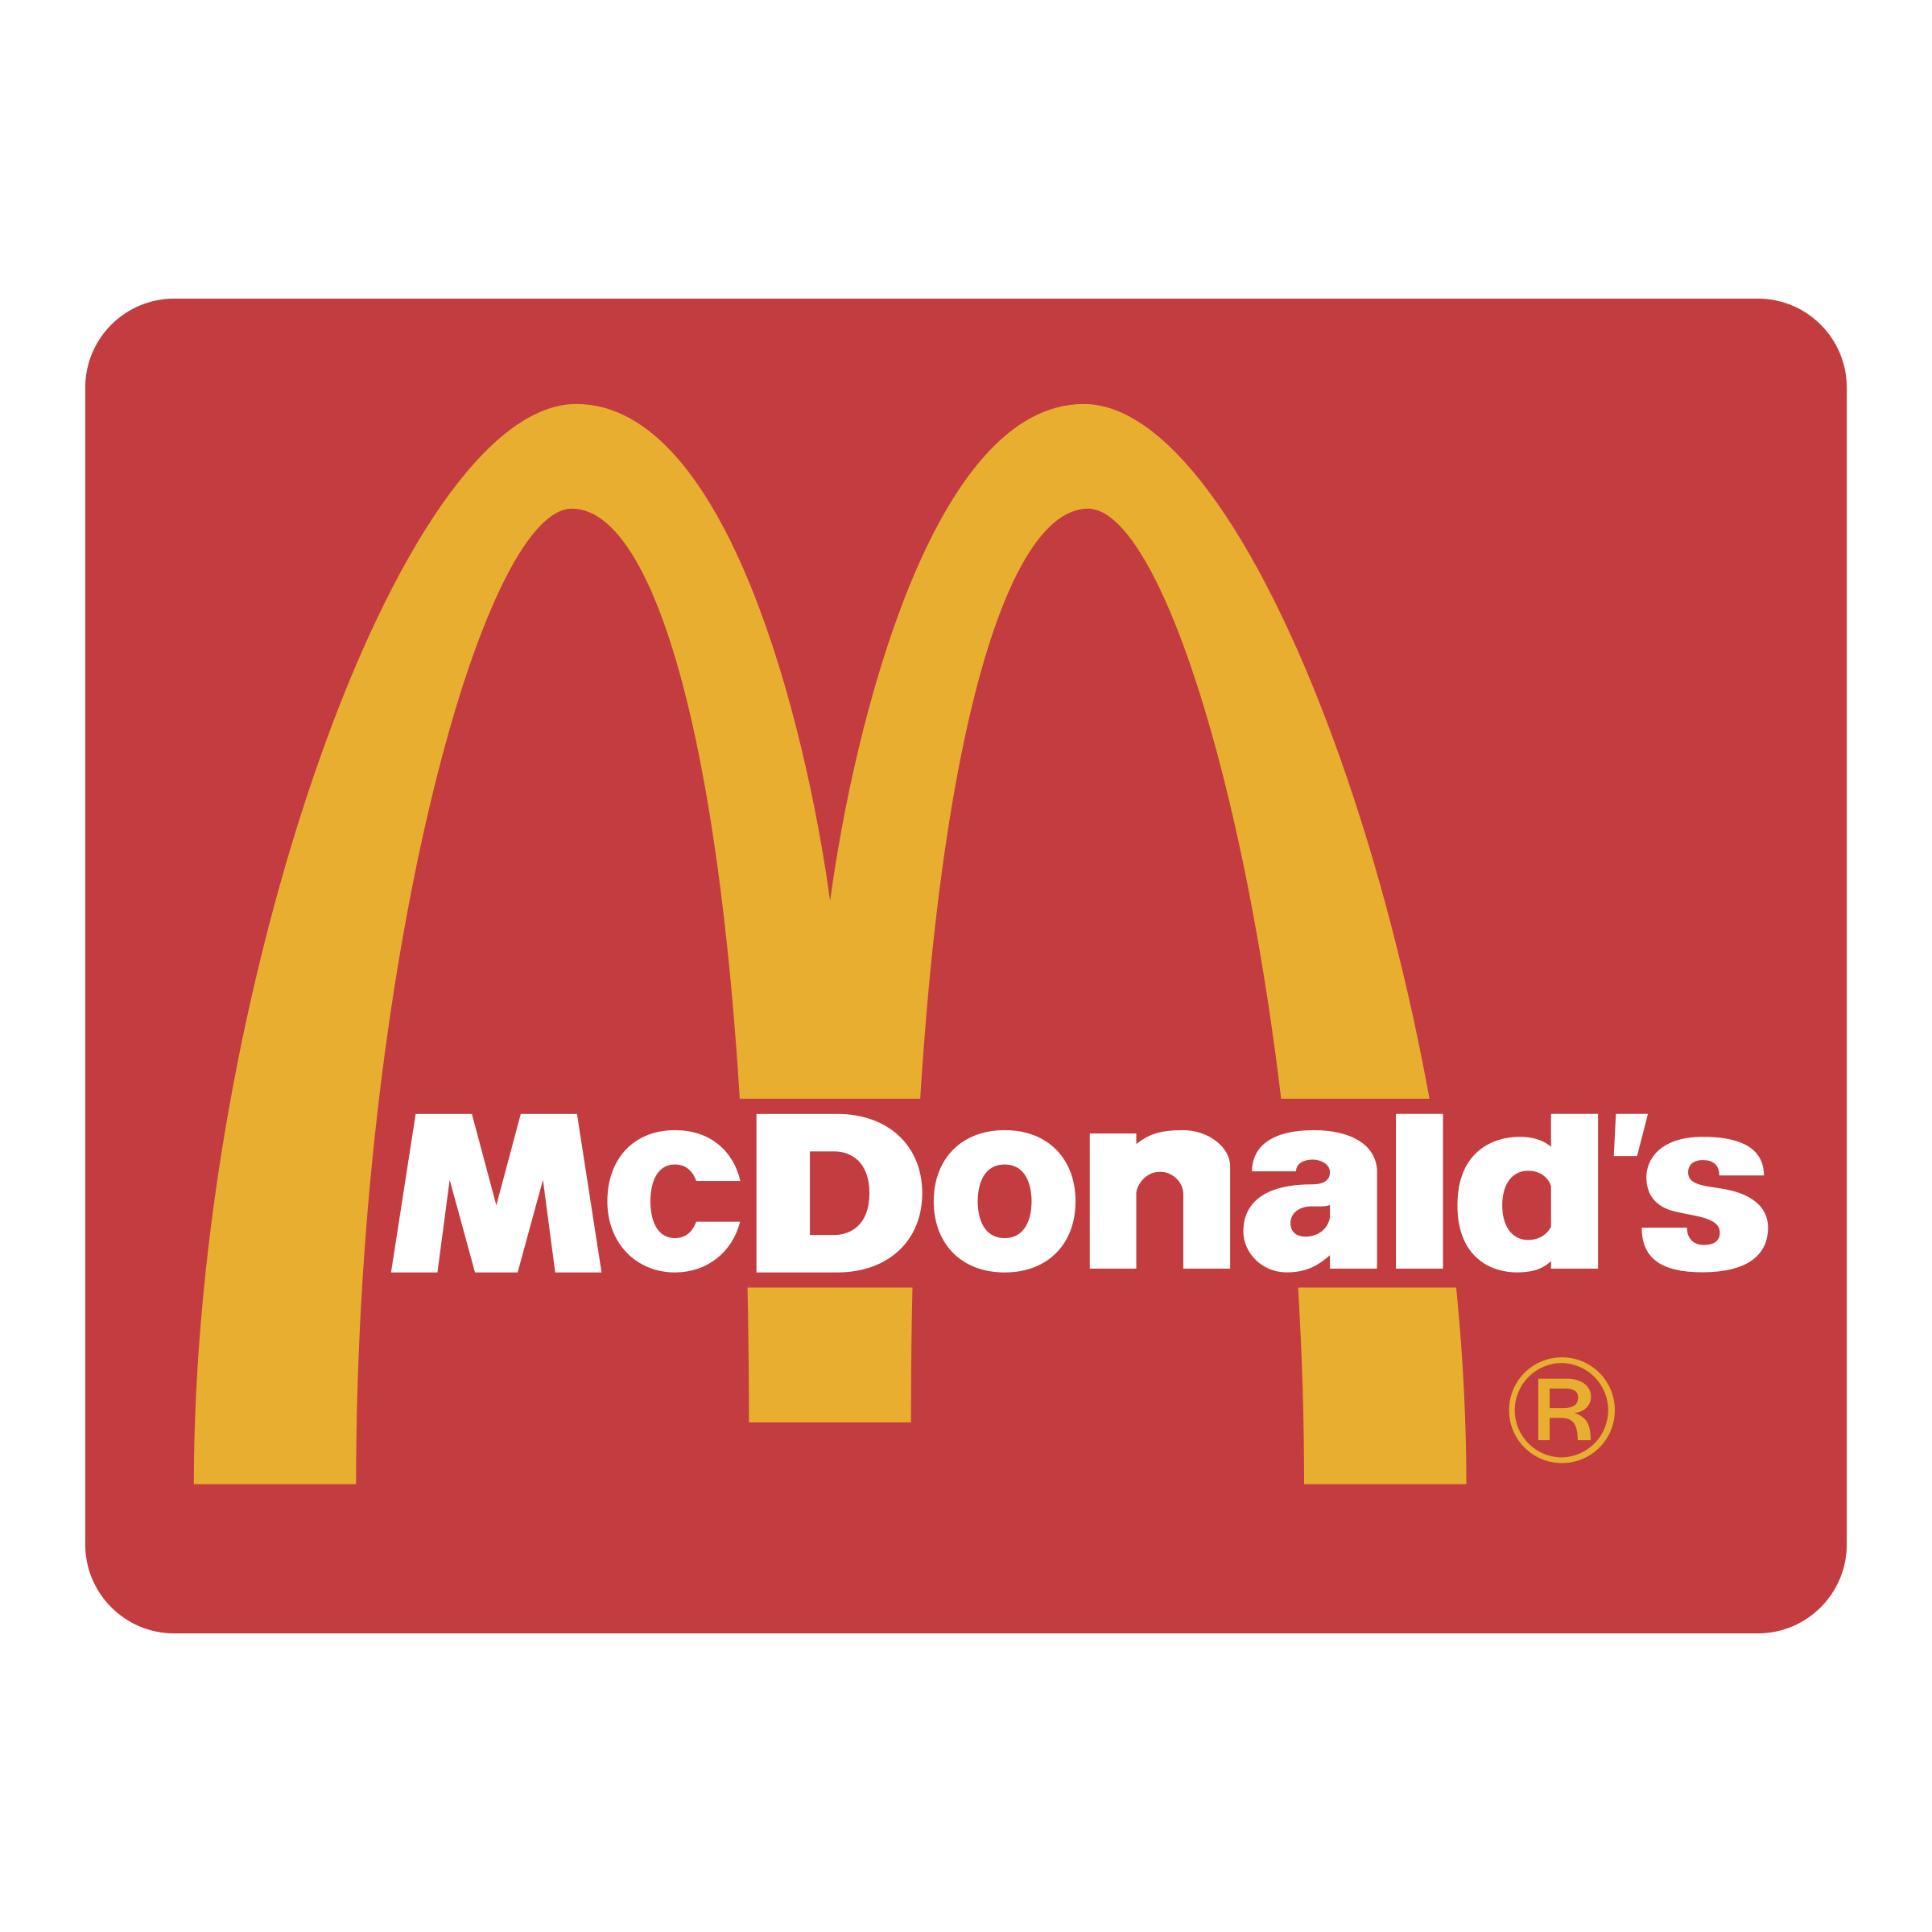 McDonald's Logo PNG Transparent & SVG Vector.